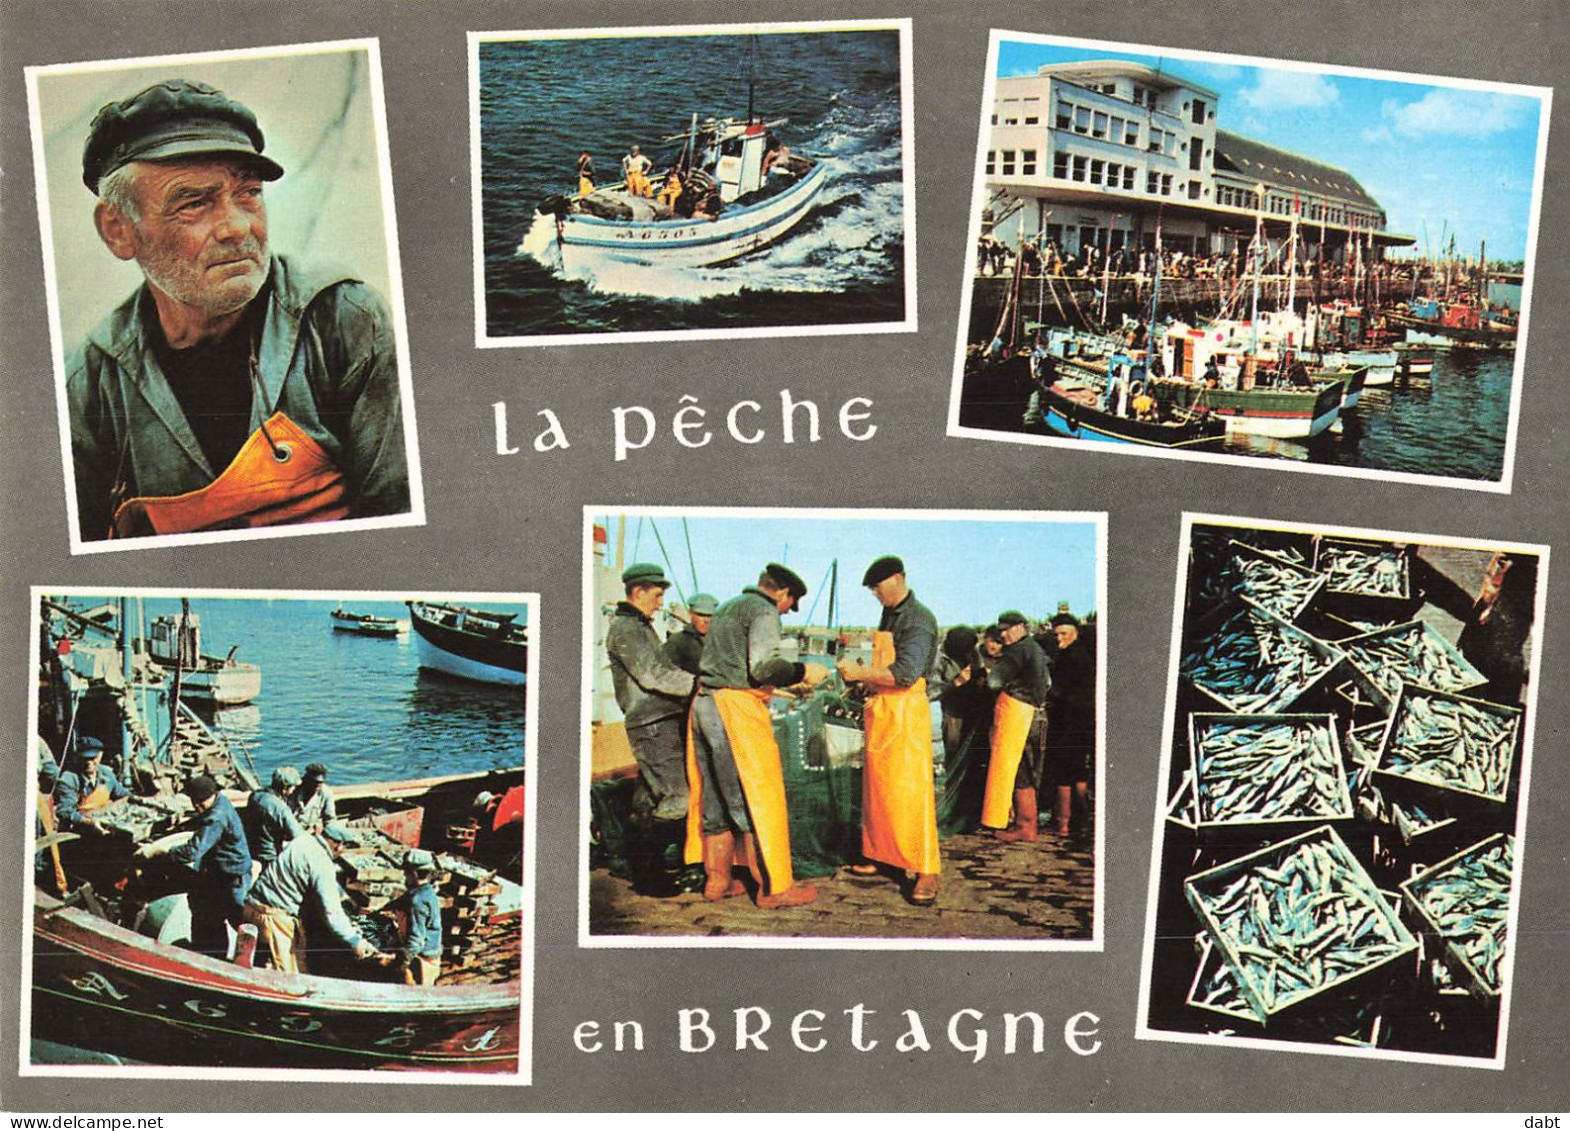 carton de 7,620 kilos de cartes postales principalement France , modernes et semi modernes.